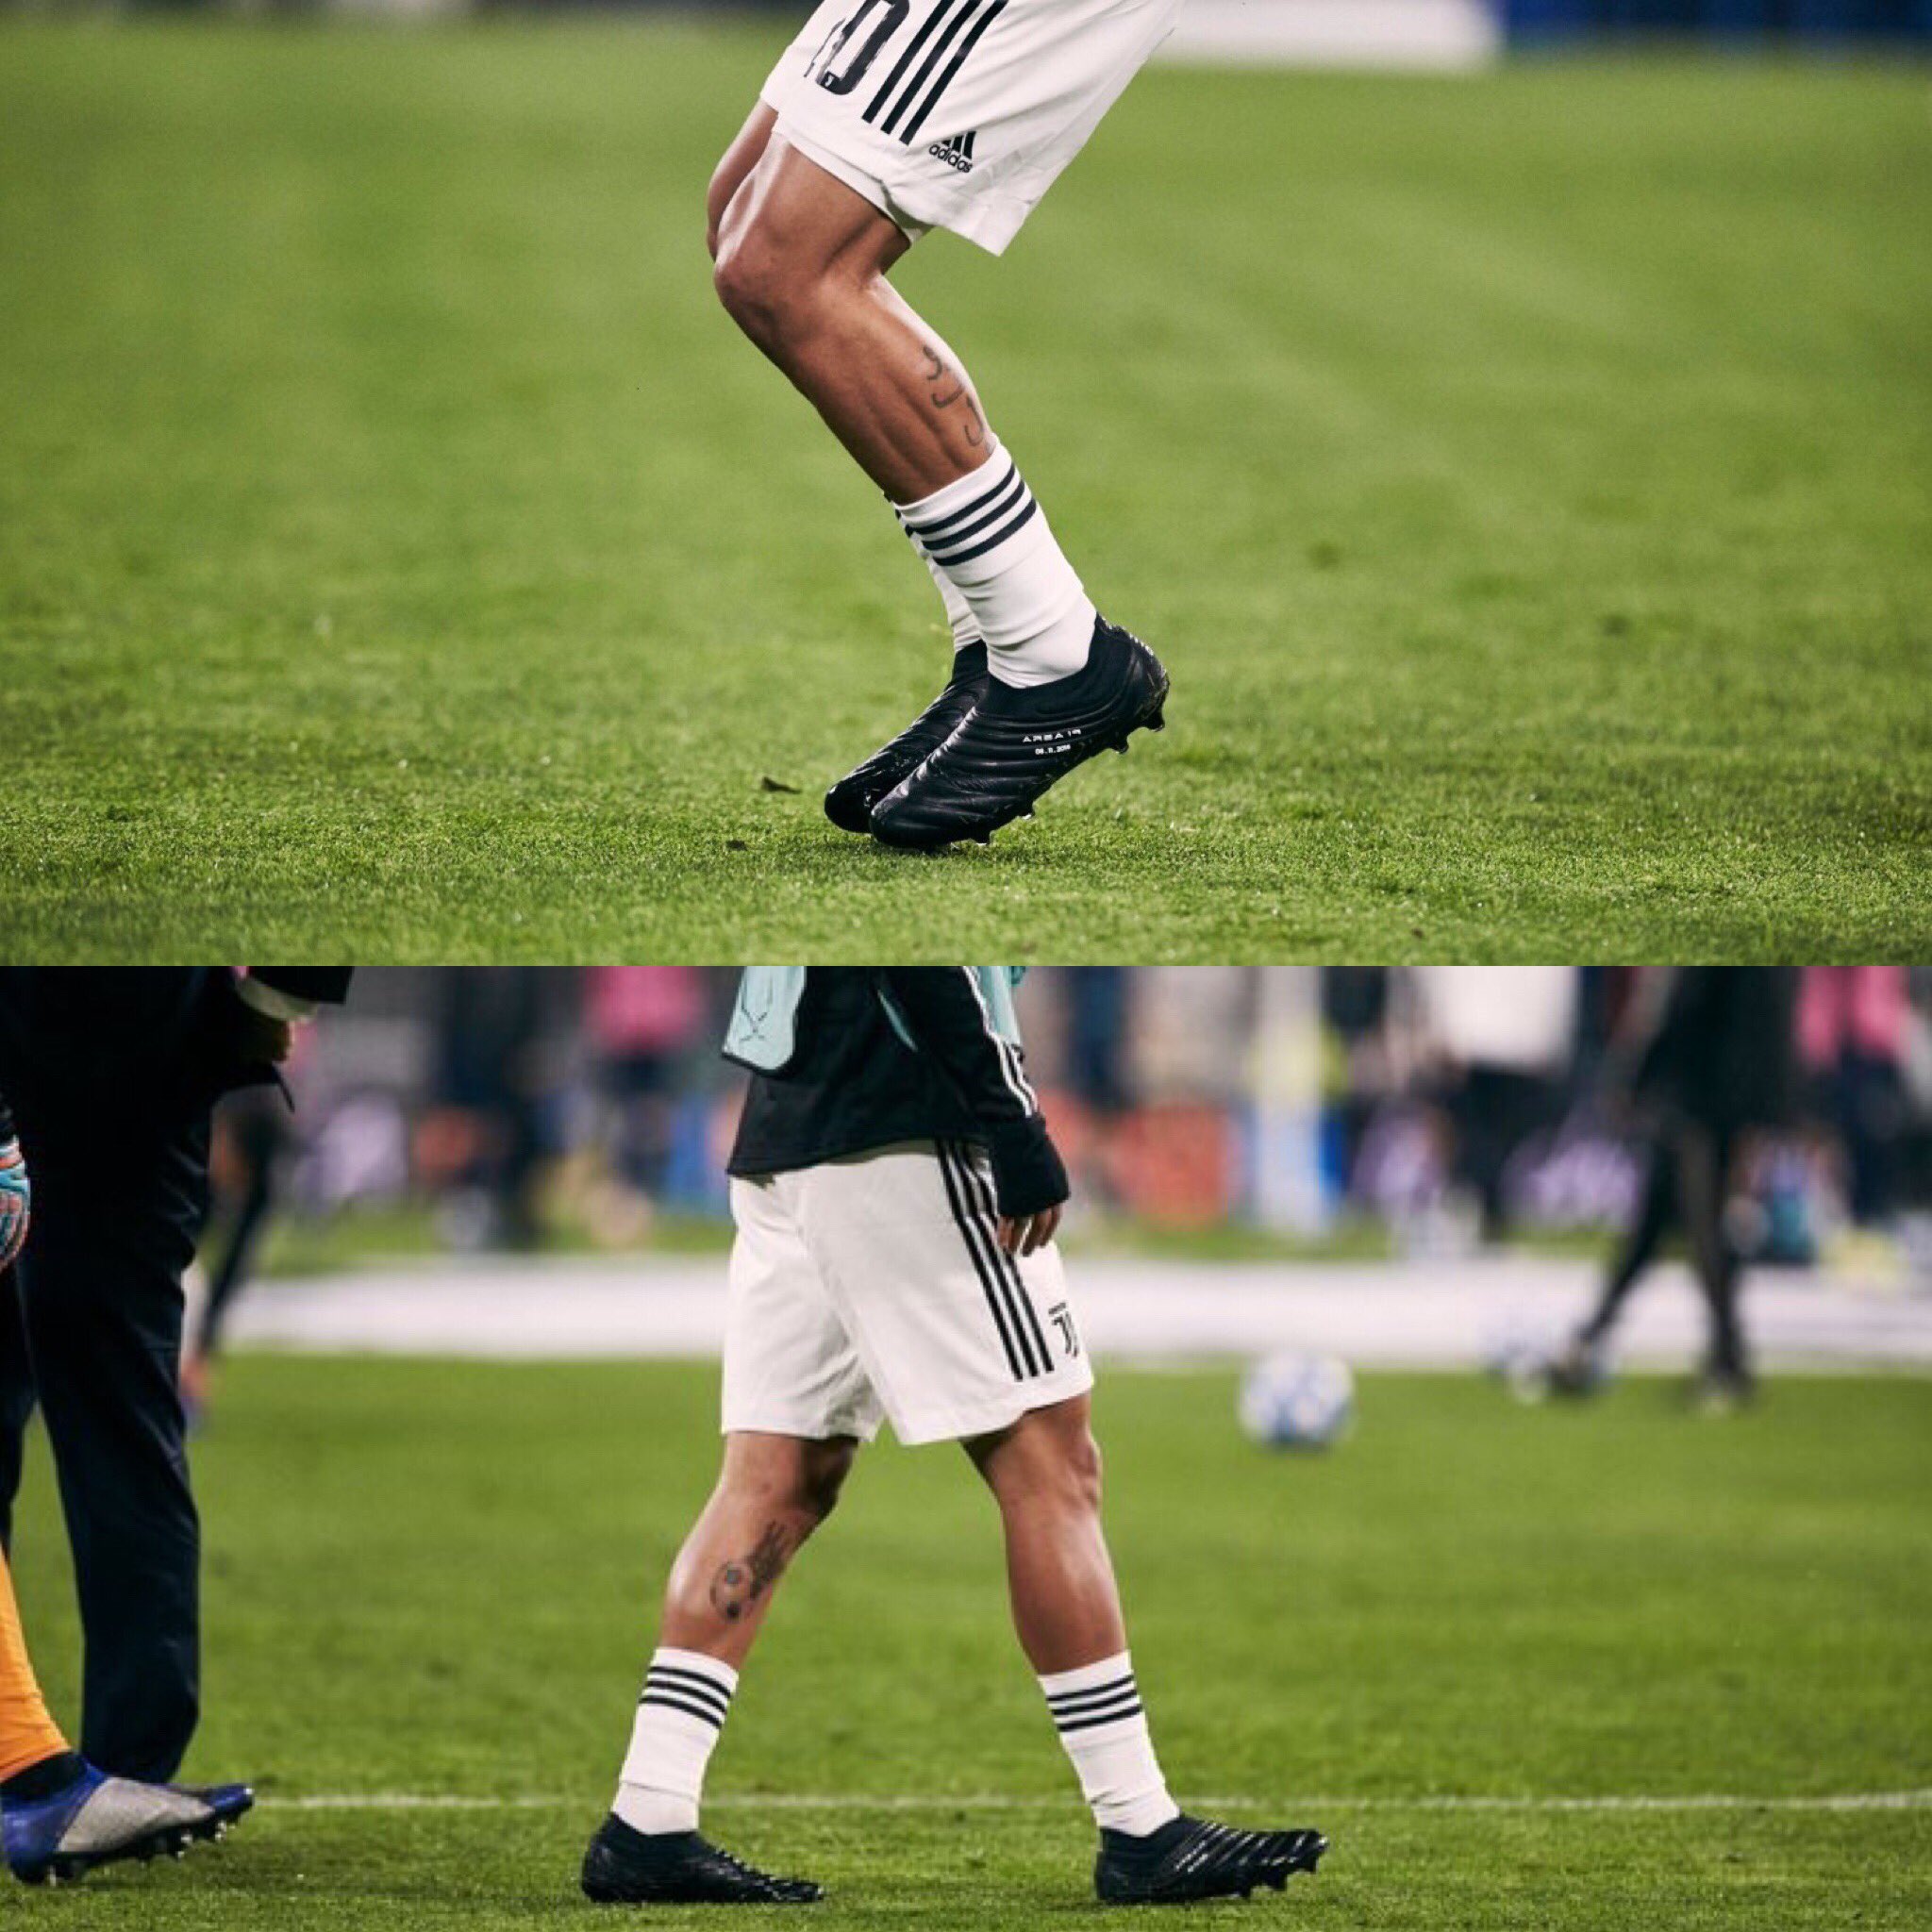 Mundialistas Twitter: "Las botas Adidas Copa 19+ que Paulo Dybala portó en el partido ante el Manchester Elegancia pura. Twitter